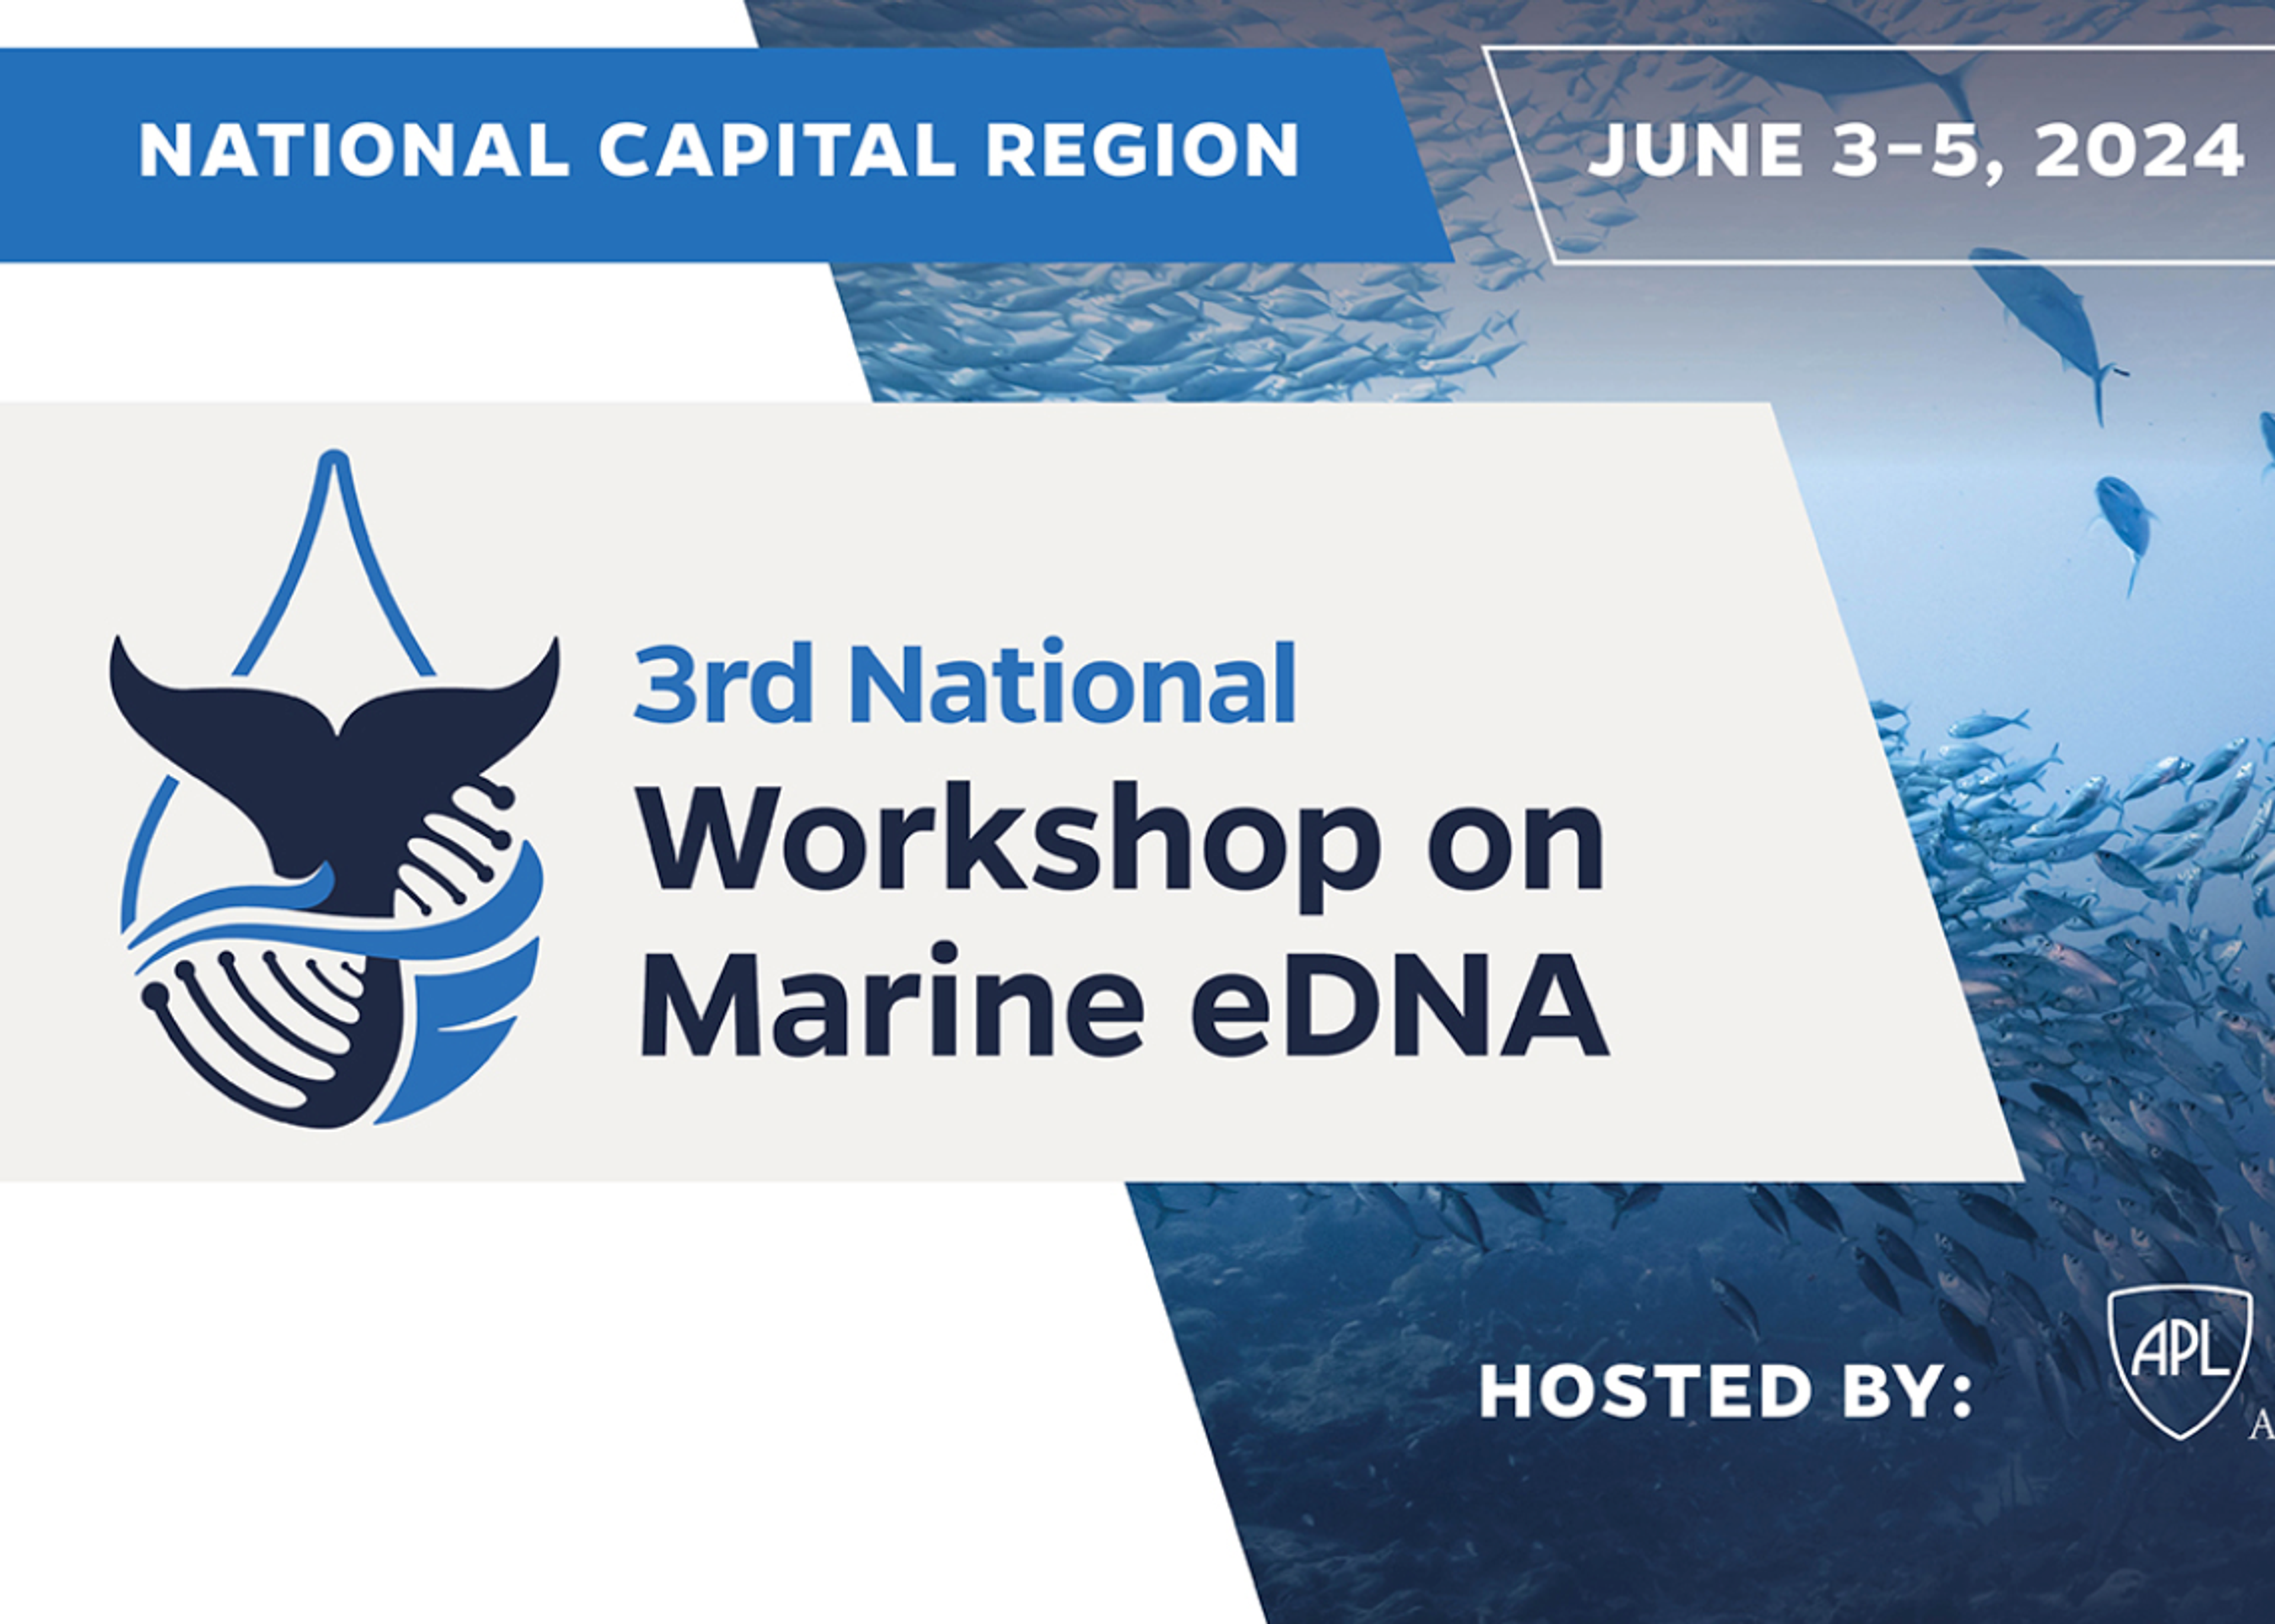 3rd National Workshop on Marine eDNA